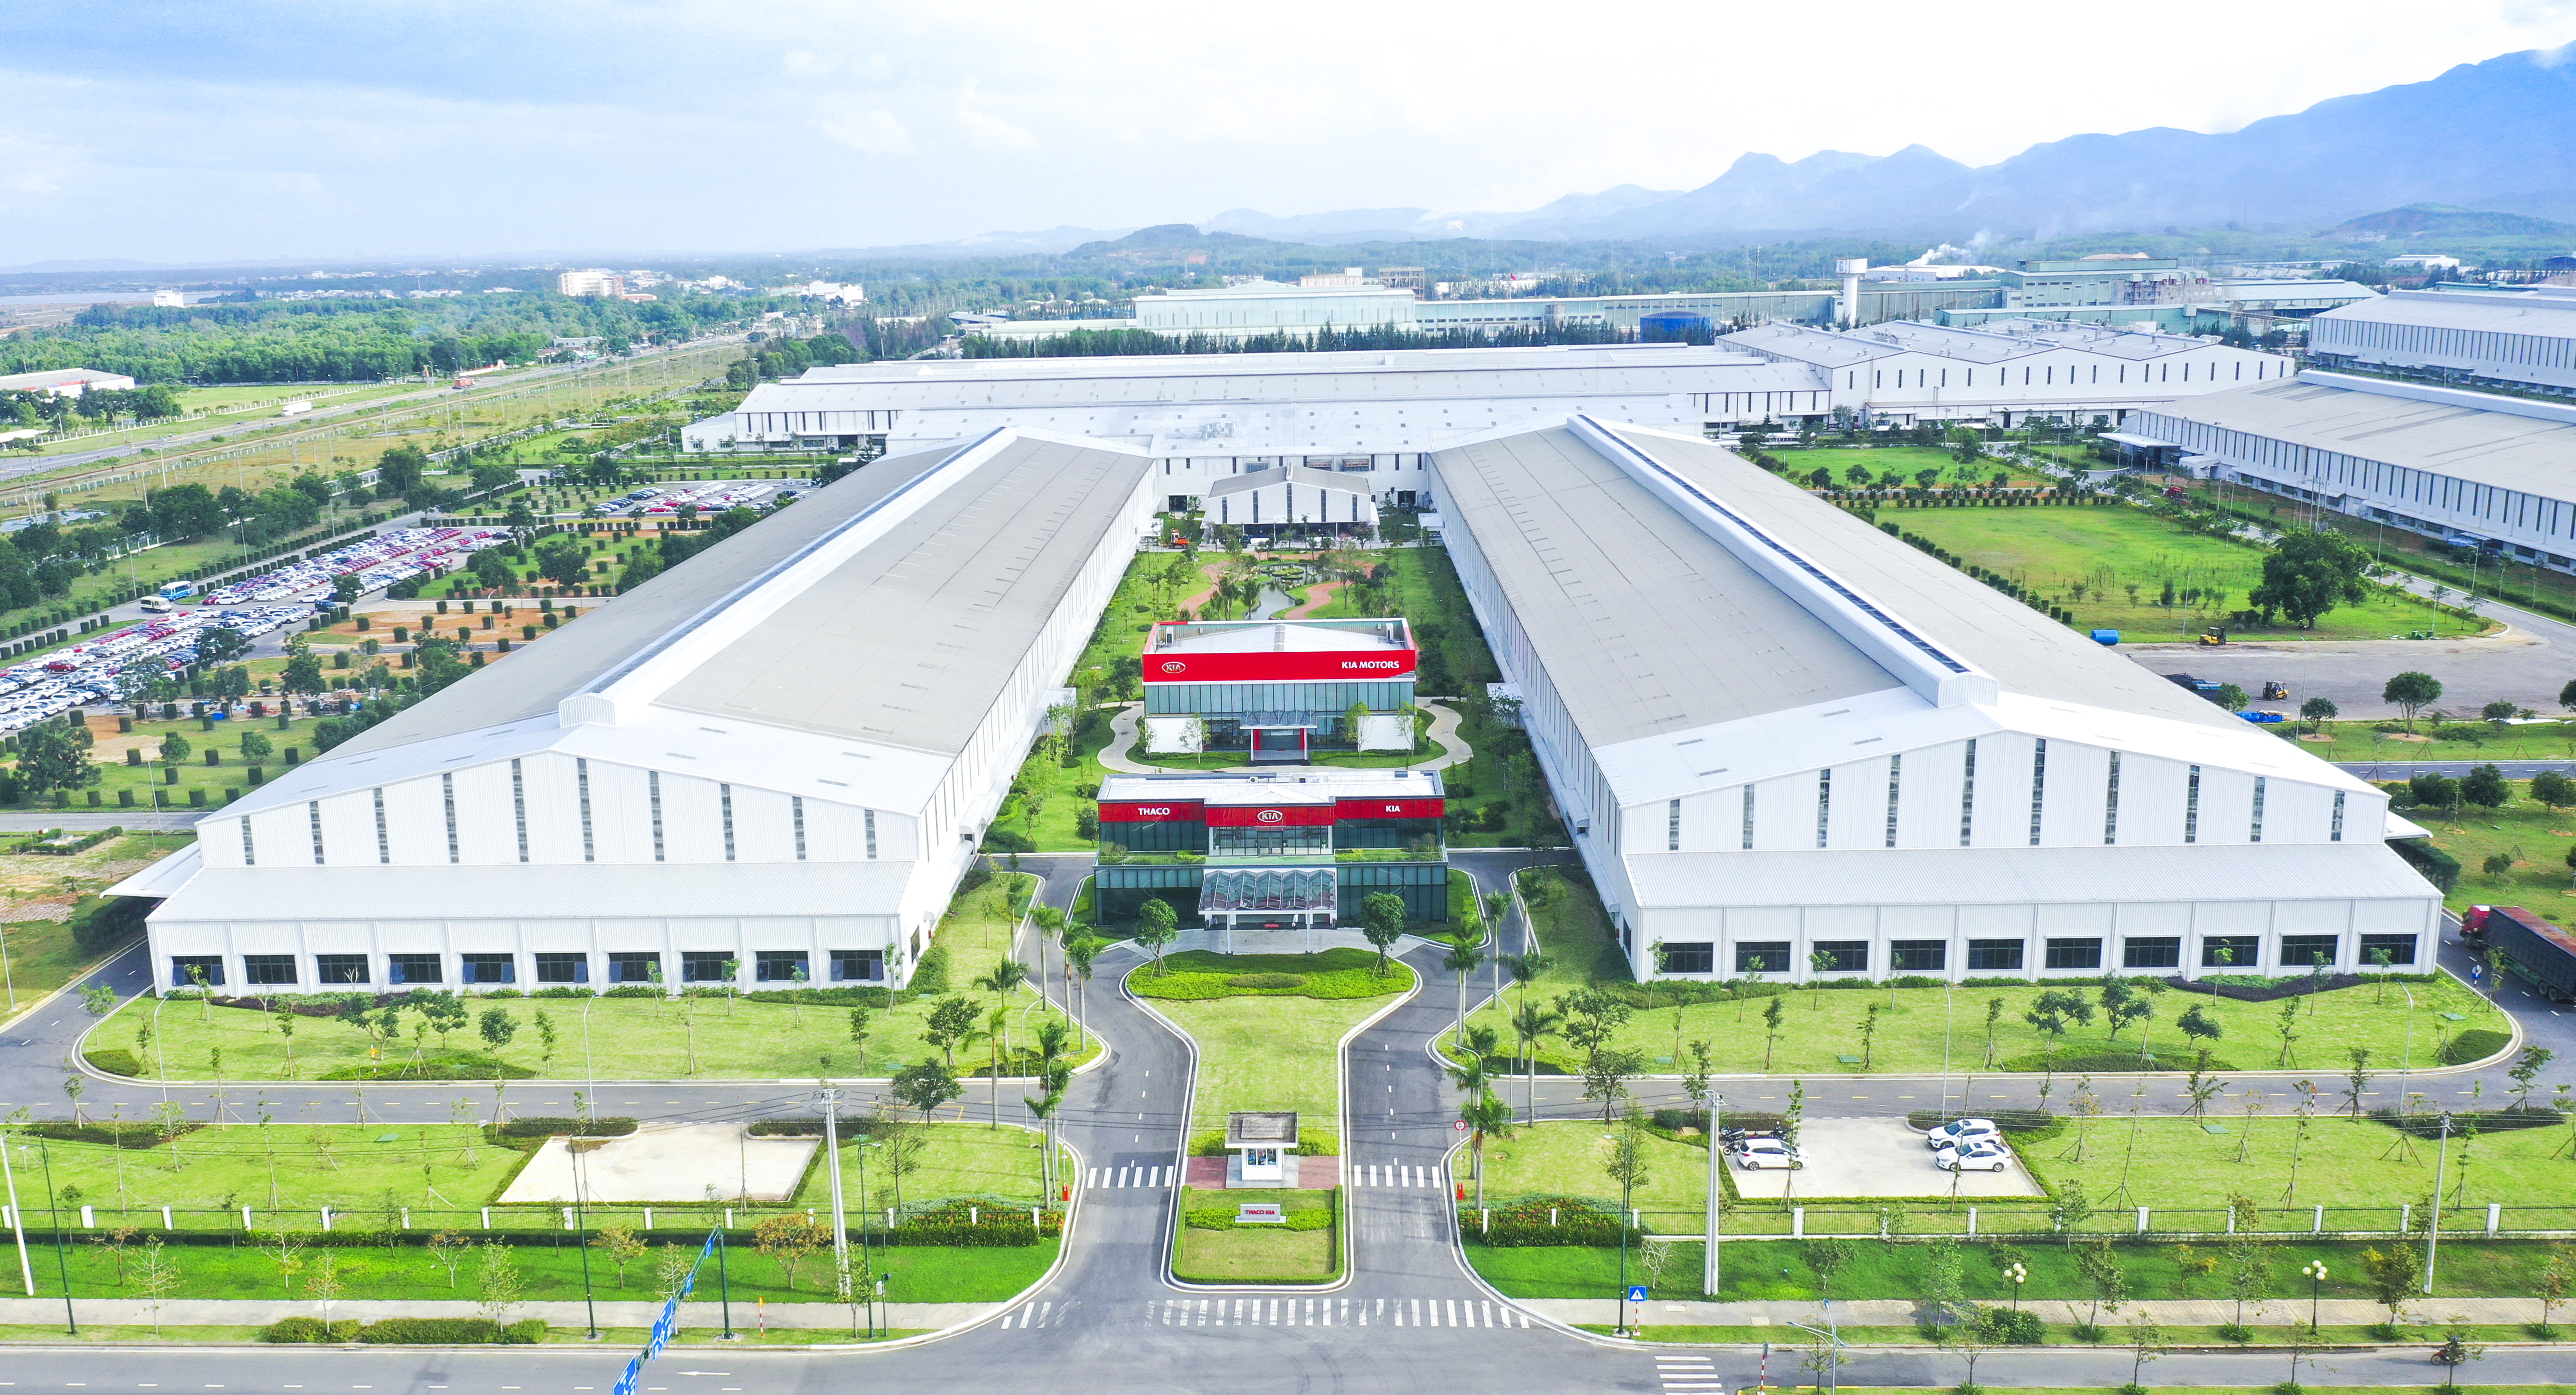 Thaco Kia nơi sản xuất các dòng xe du lịch Kia hiện đại, an toàn, tiện nghi